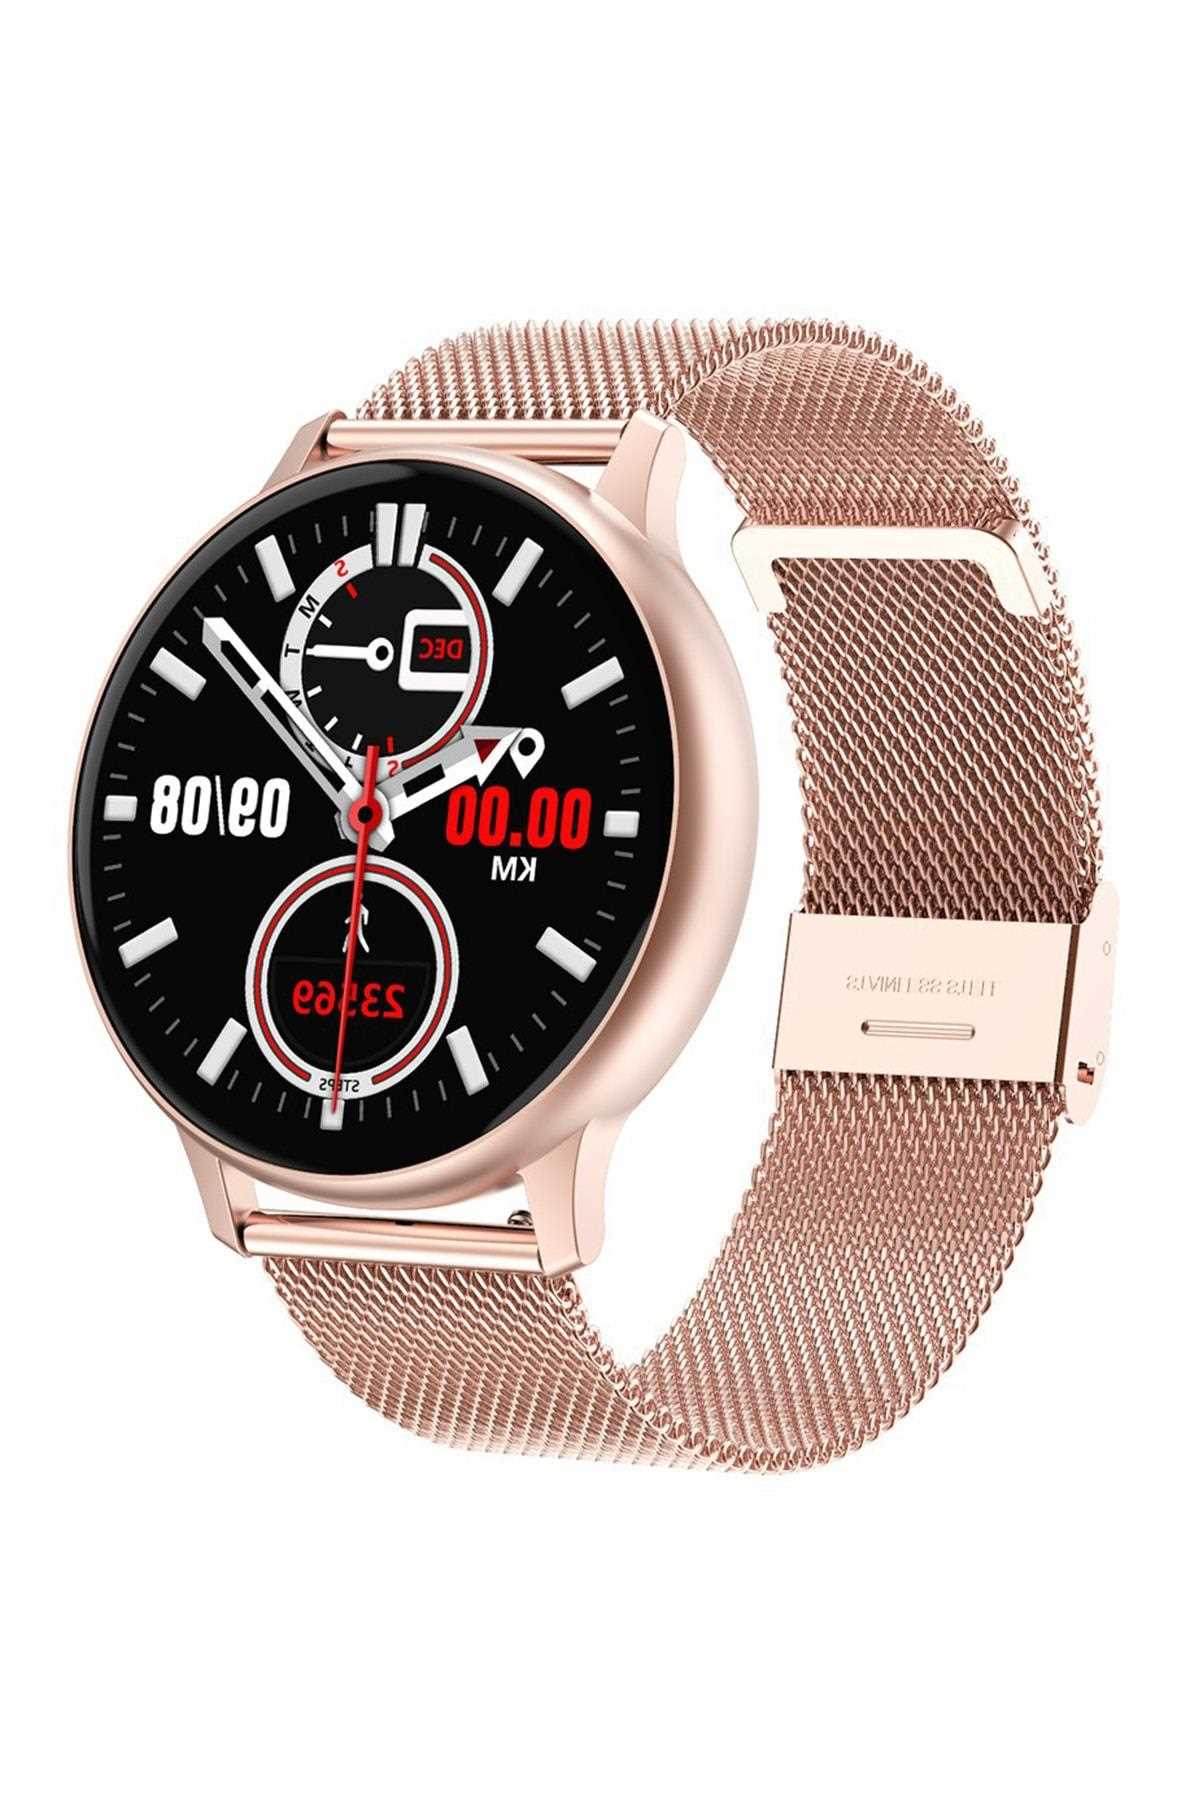 فروش پستی ساعت هوشمند برند Spovan رزگلد ty47025762